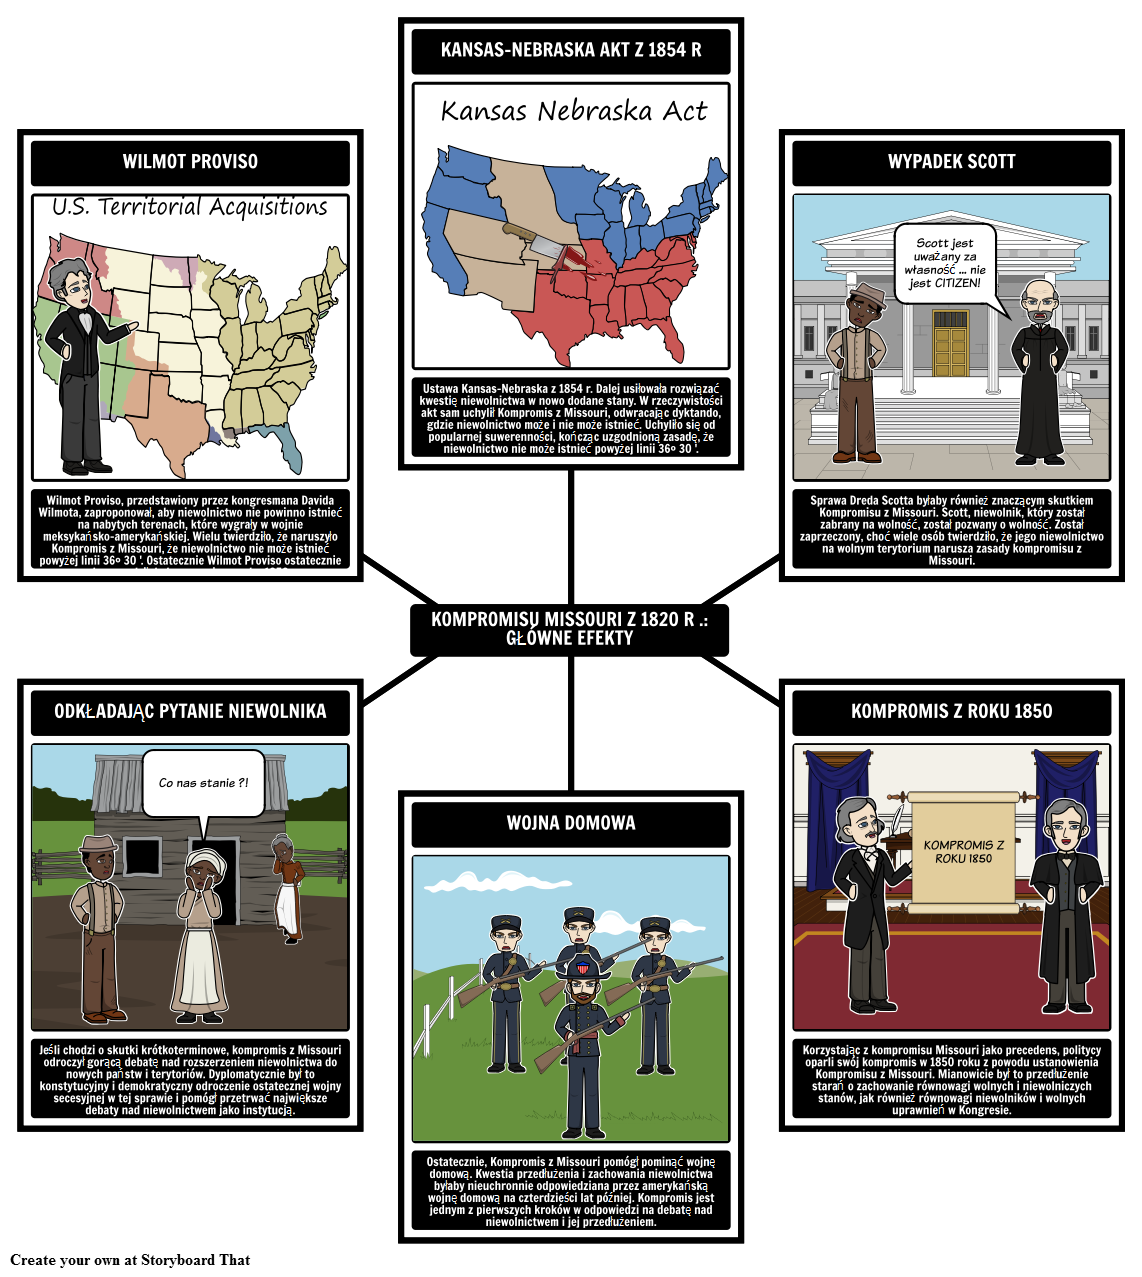 Kompromis Missouri z 1820 roku - główne efekty